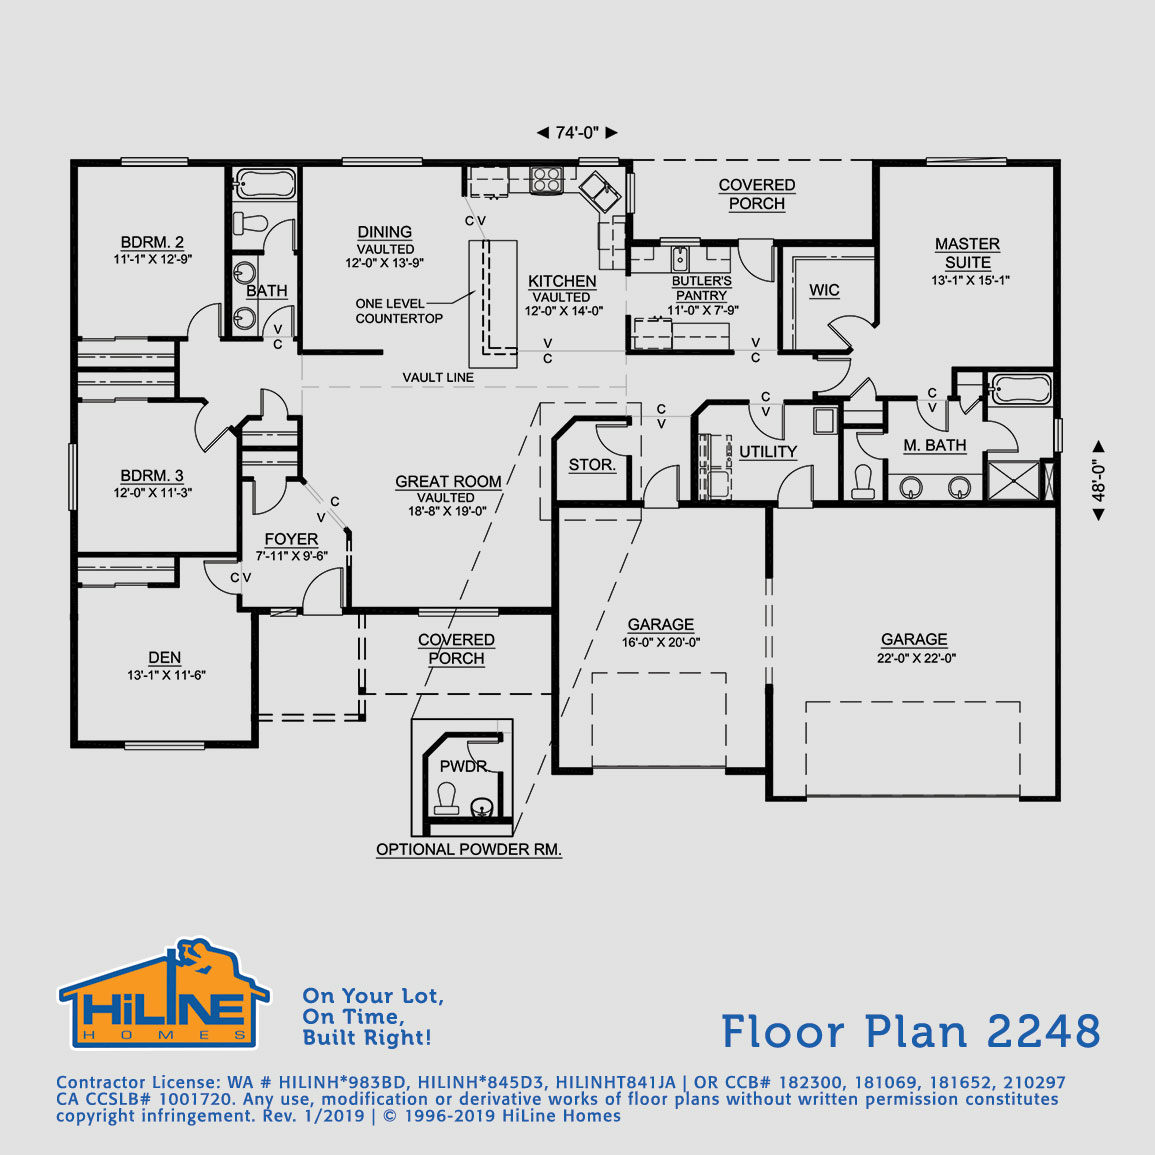 Floorplan 2248 HiLine Homes